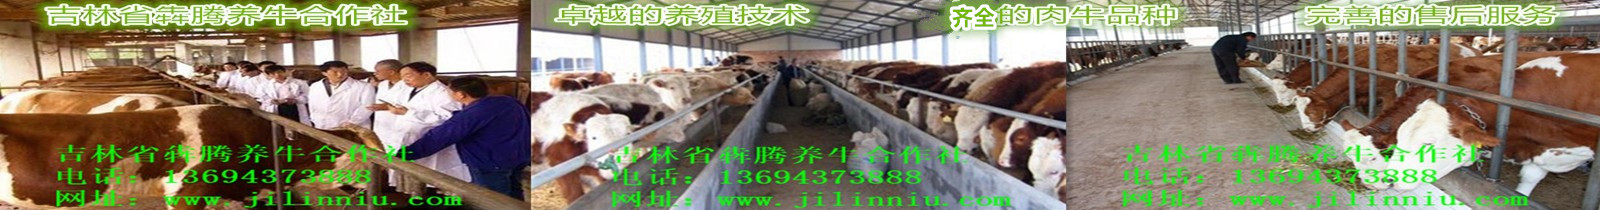 3肉牛|西门塔尔牛|肉牛价格|牛犊|牛犊价格|肉牛养殖|吉林肉牛|东北肉牛|母牛